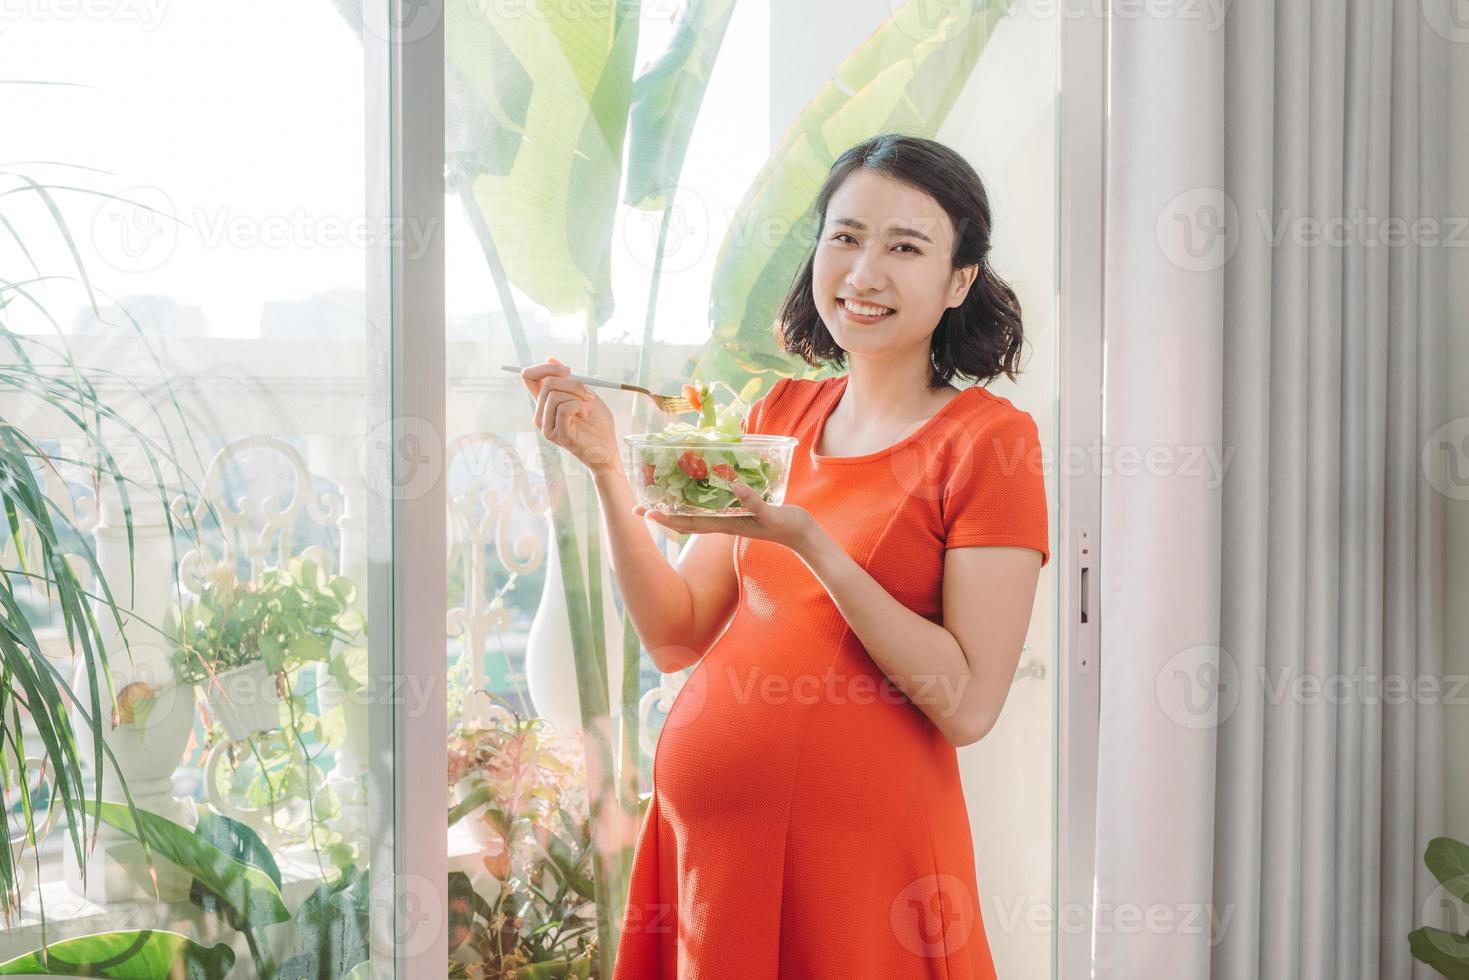 voller Vitamine. Energiegeladene, gut aussehende schwangere Frau, die ihr Fleisch isst, während sie einen Teller in der Hand trägt und sich am Fenster entspannt foto